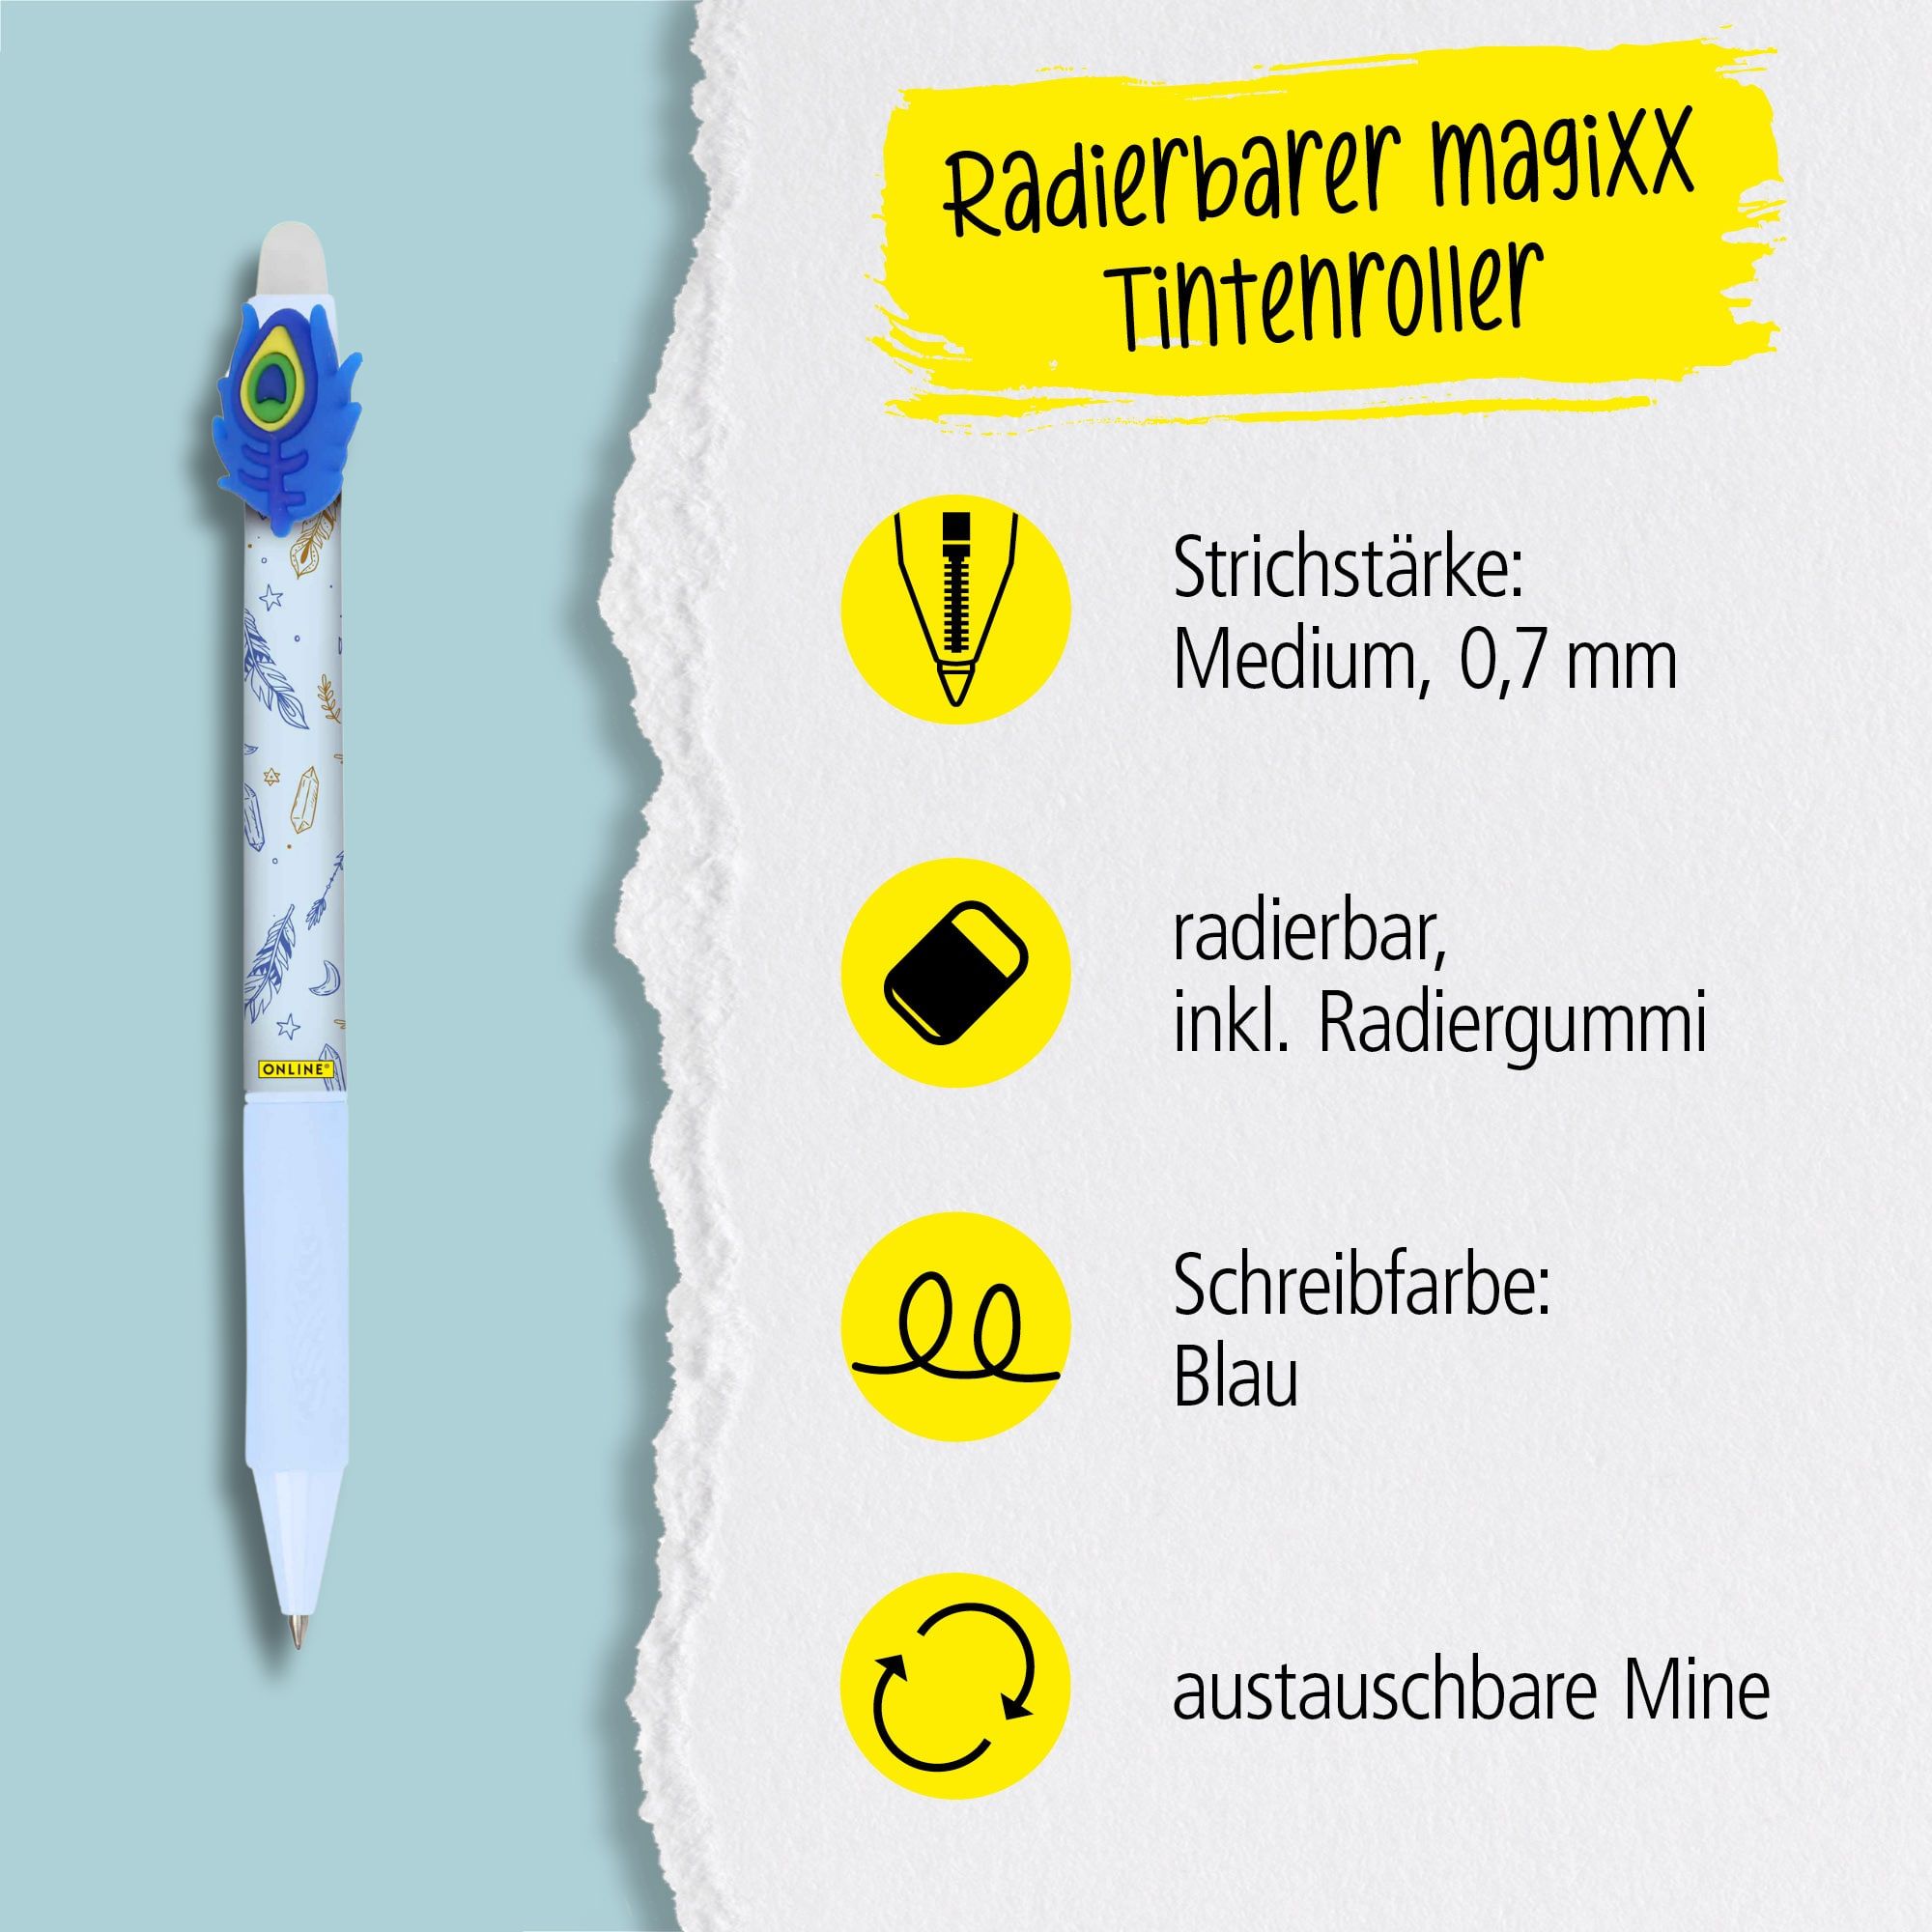 Eine austauschbare Mine und radierbare Tinte in der Schreibfarbe Blau zeichnet unsere magiXX aus